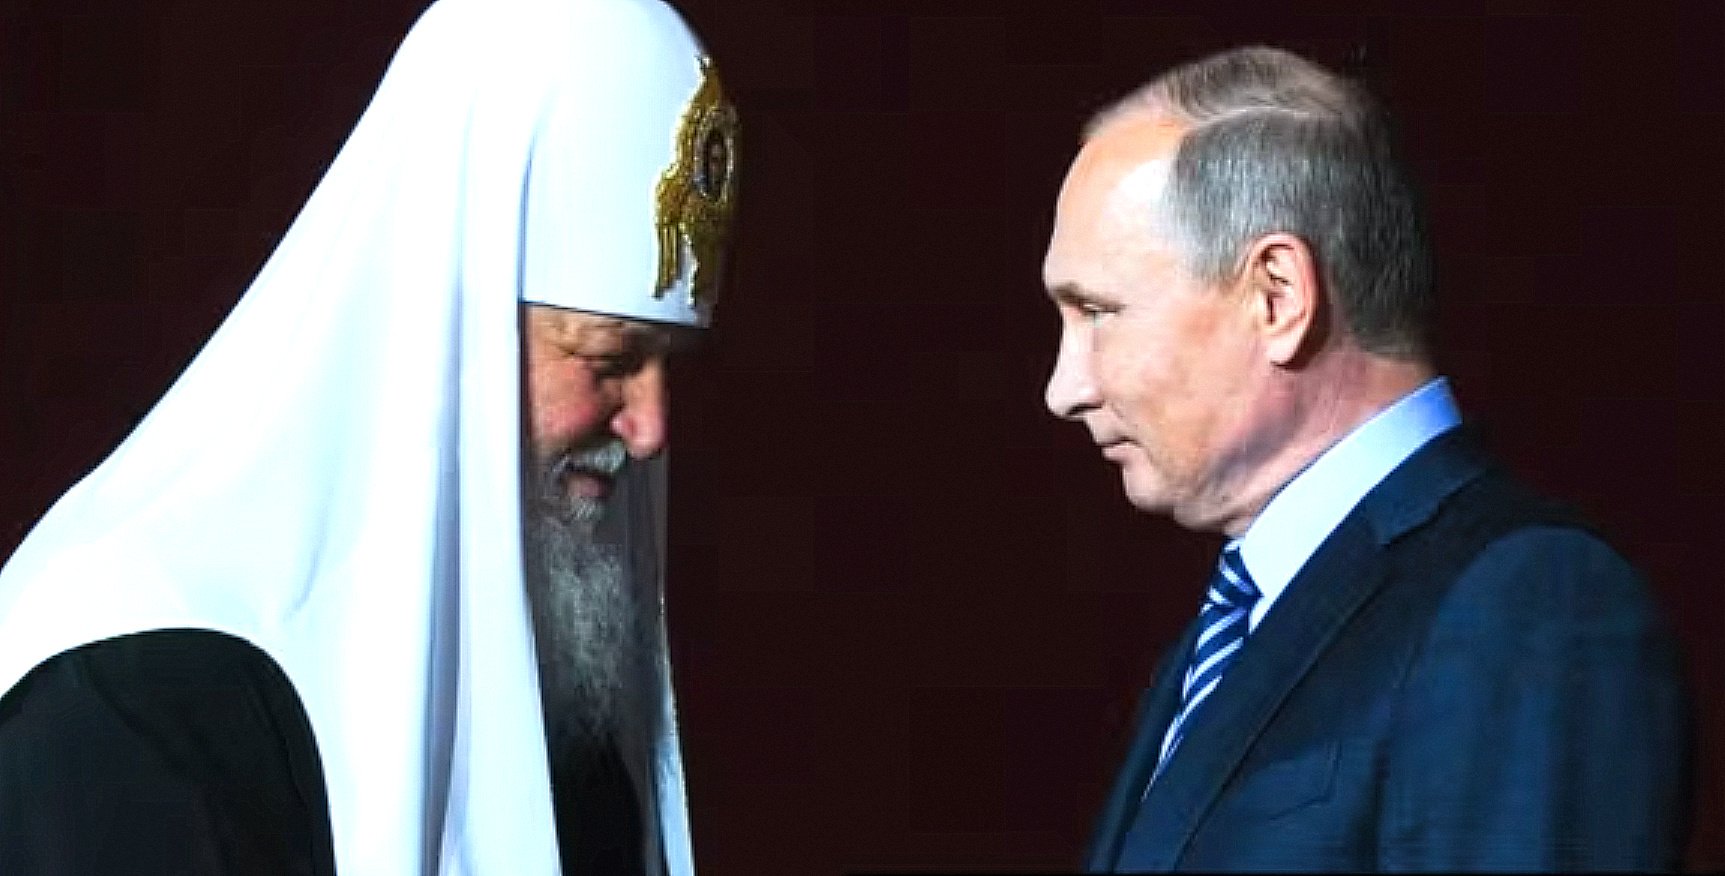 Popovi špijuni: Švedska obustavila finansiranje ogranka Ruske crkve